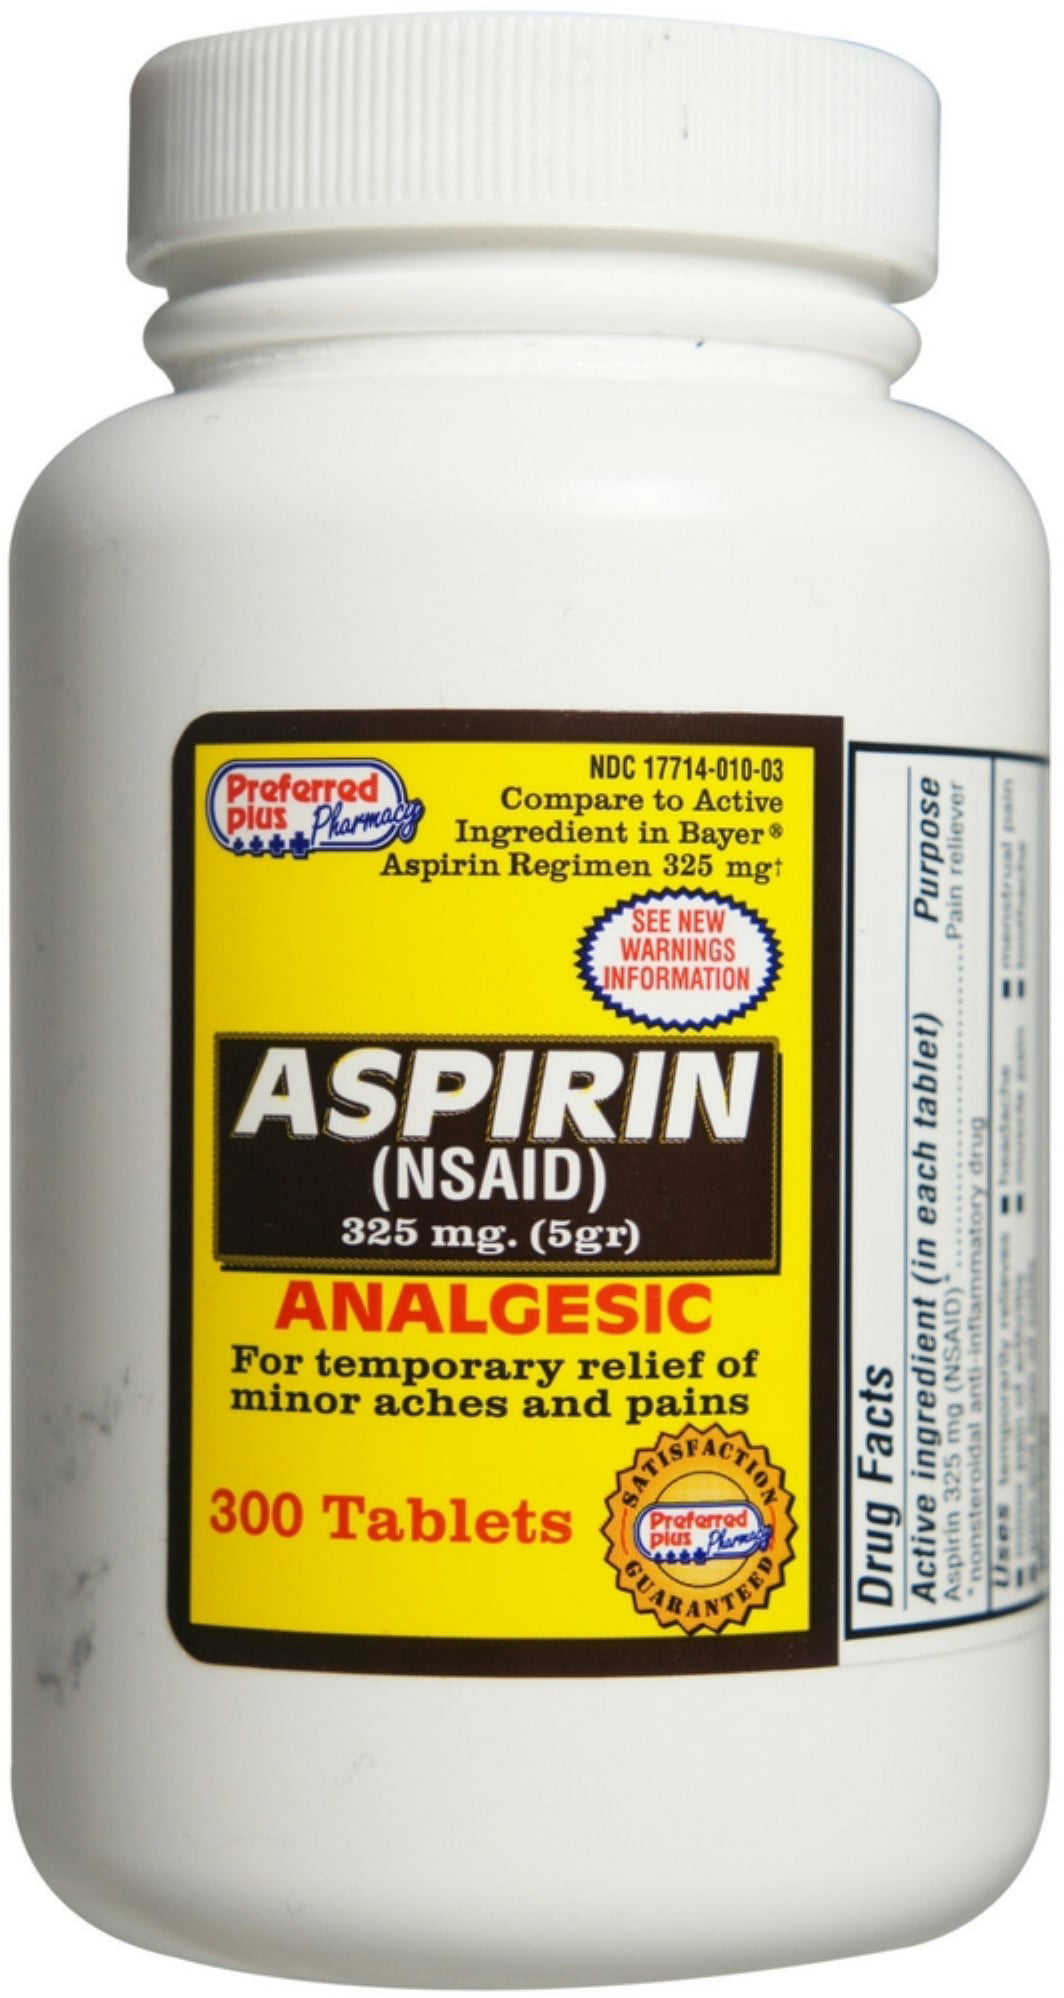 is aspirin good for fever